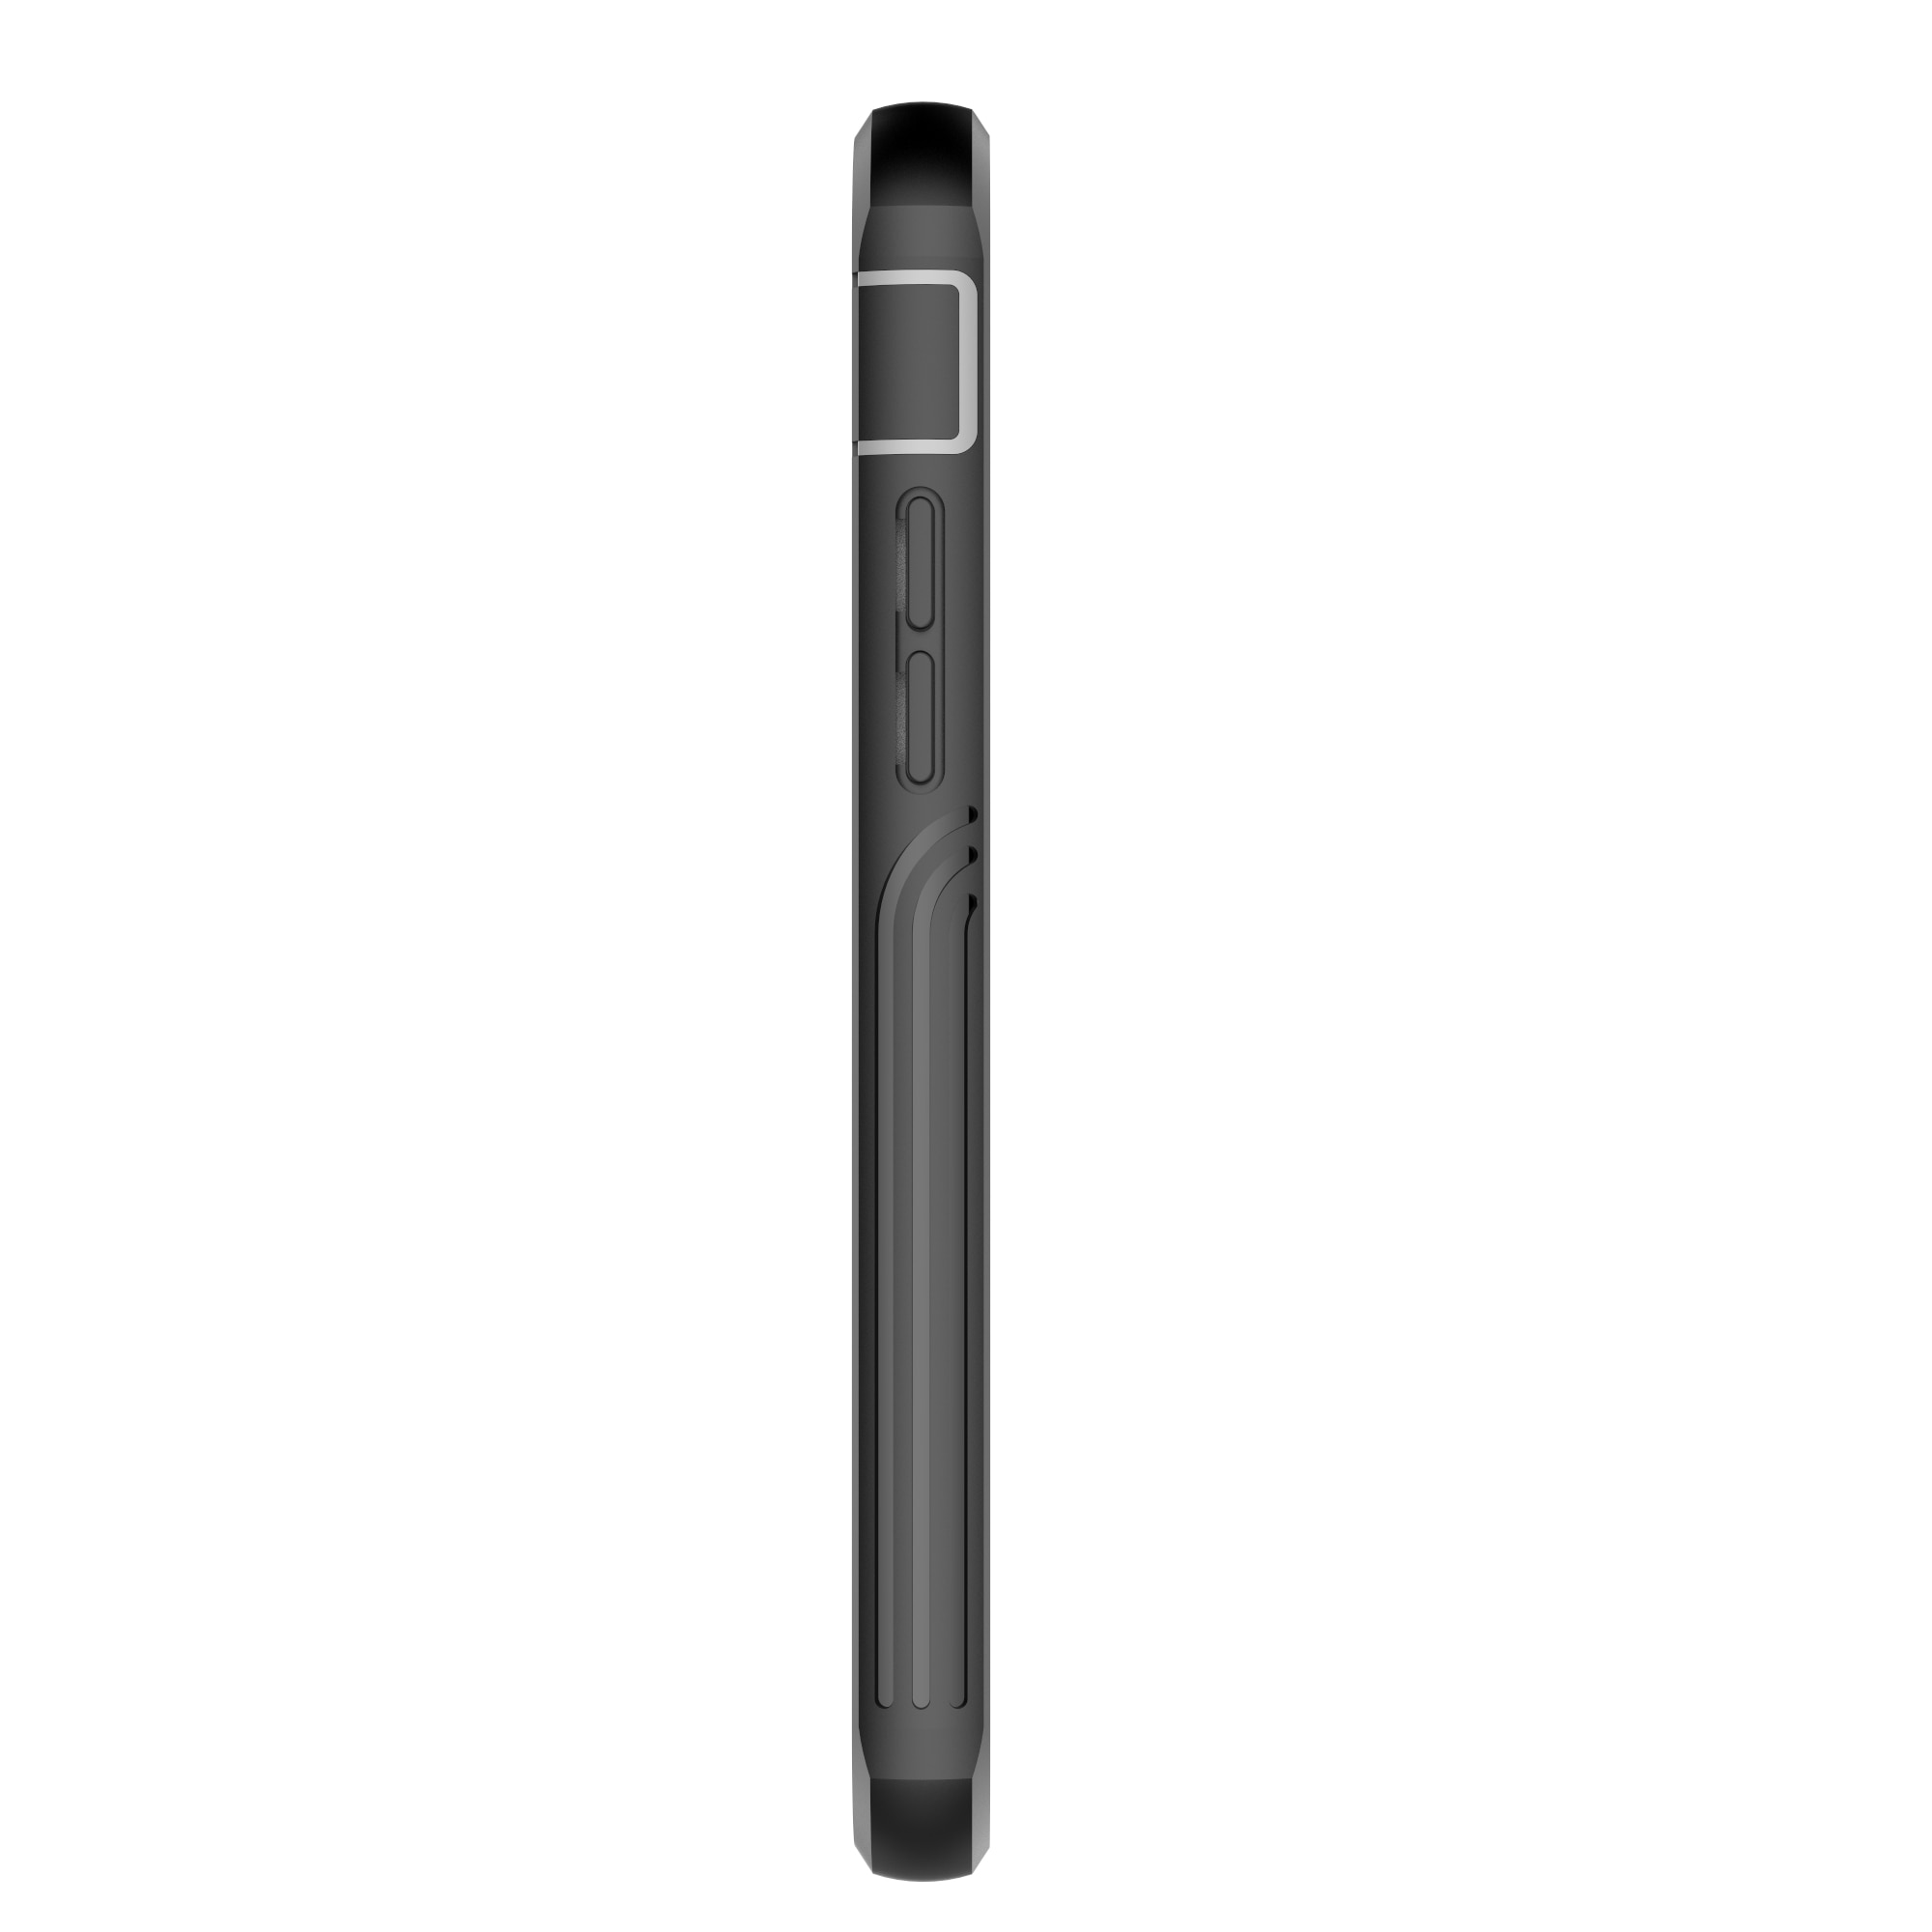 Coque Premium Full Protection iPhone 7, noir